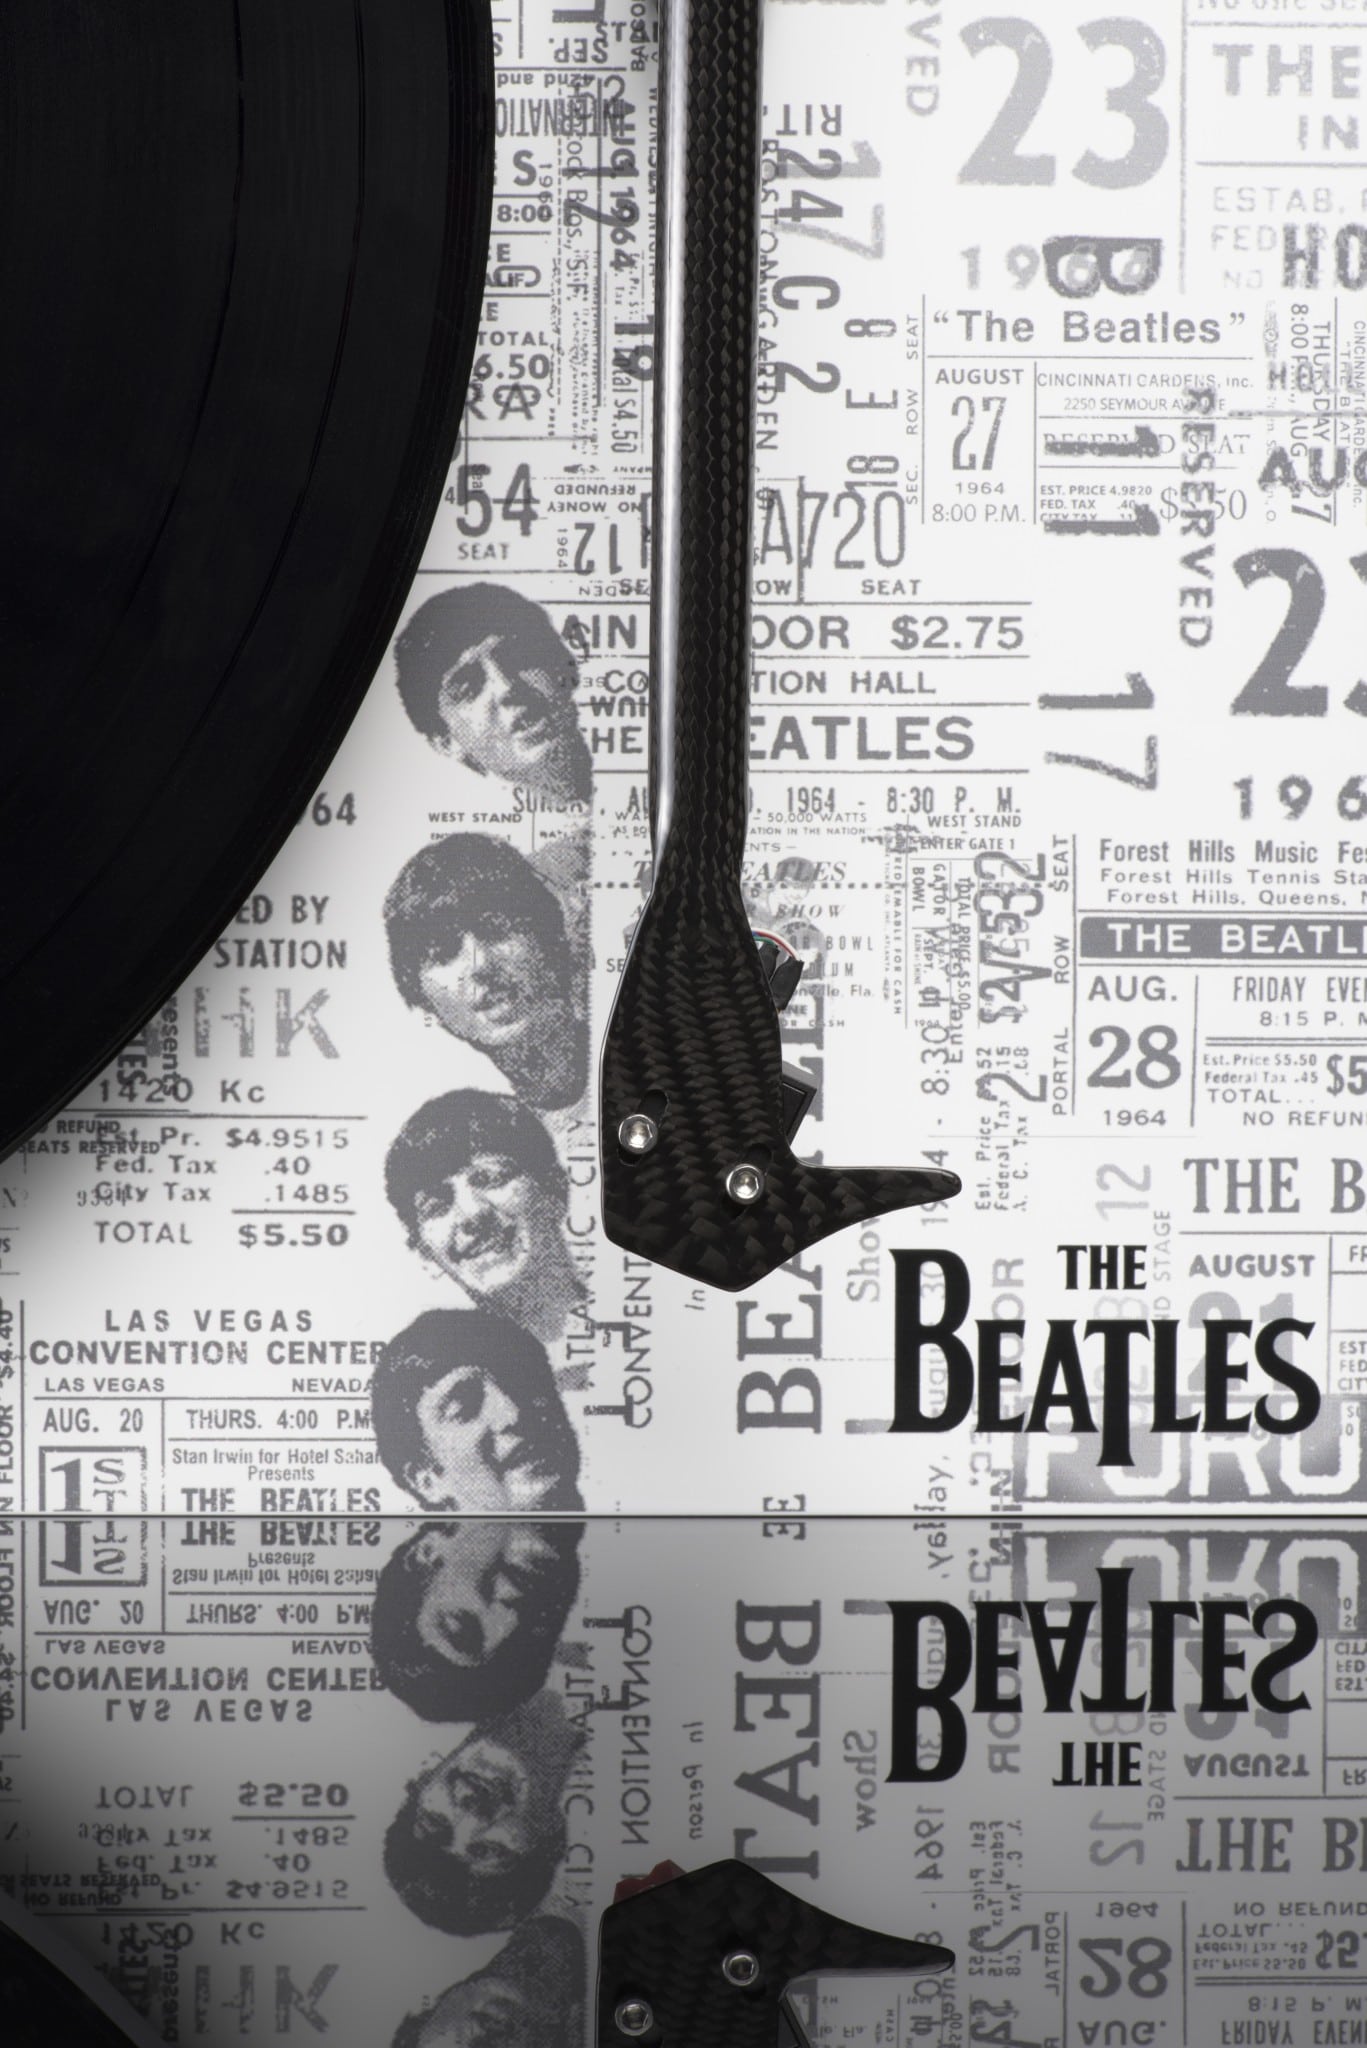 PJ-Debut-Carbon-Esprit-SB-The-Beatles-1964-Recordplayer-arm-print-top-hires